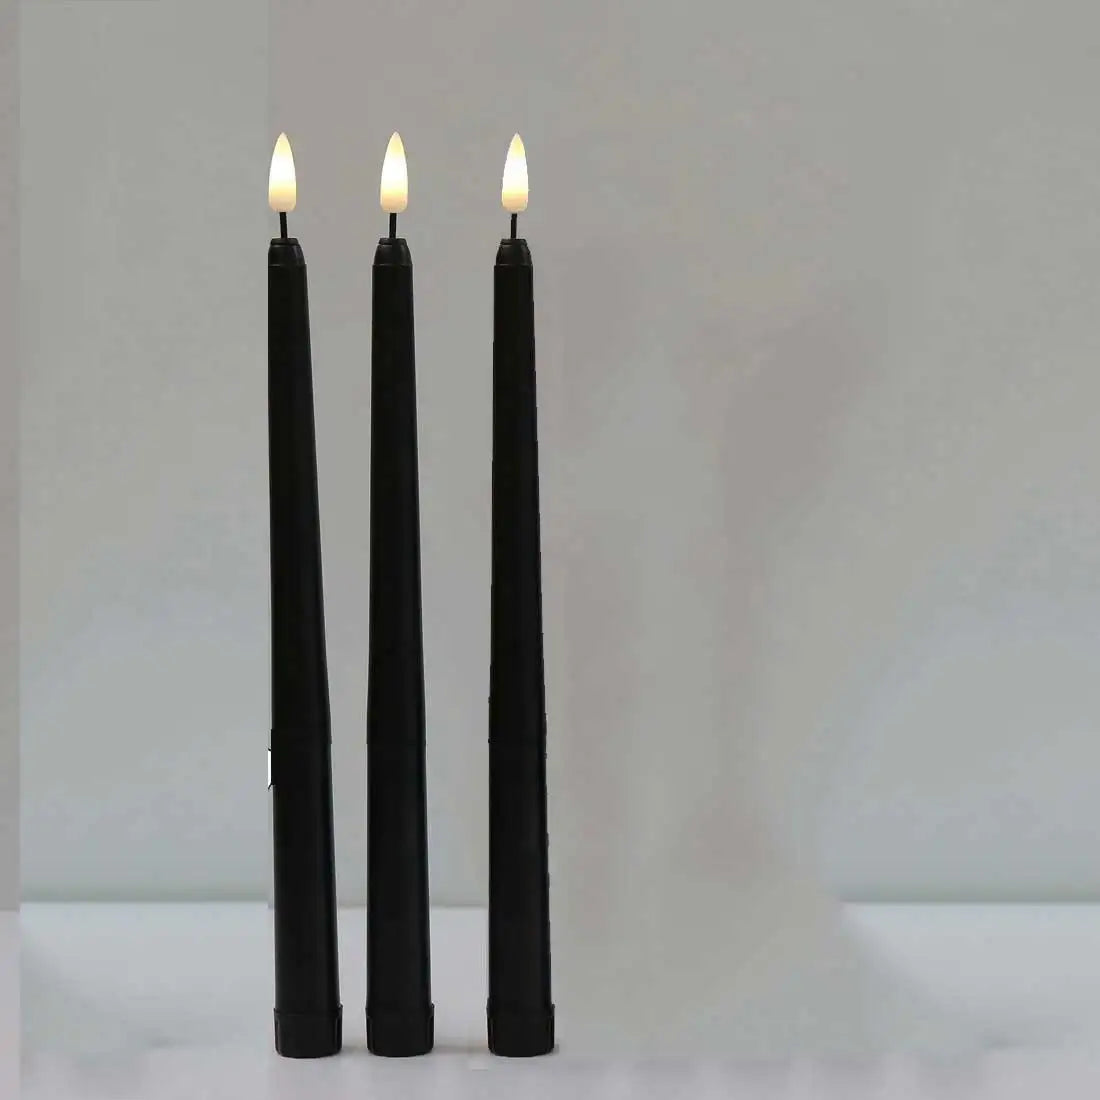 3 of 4 stuks 11 inch Halloween Black Flameless Led Taper kaarsen met geel/warm wit licht, batterijplastic nep LED -kaarsen